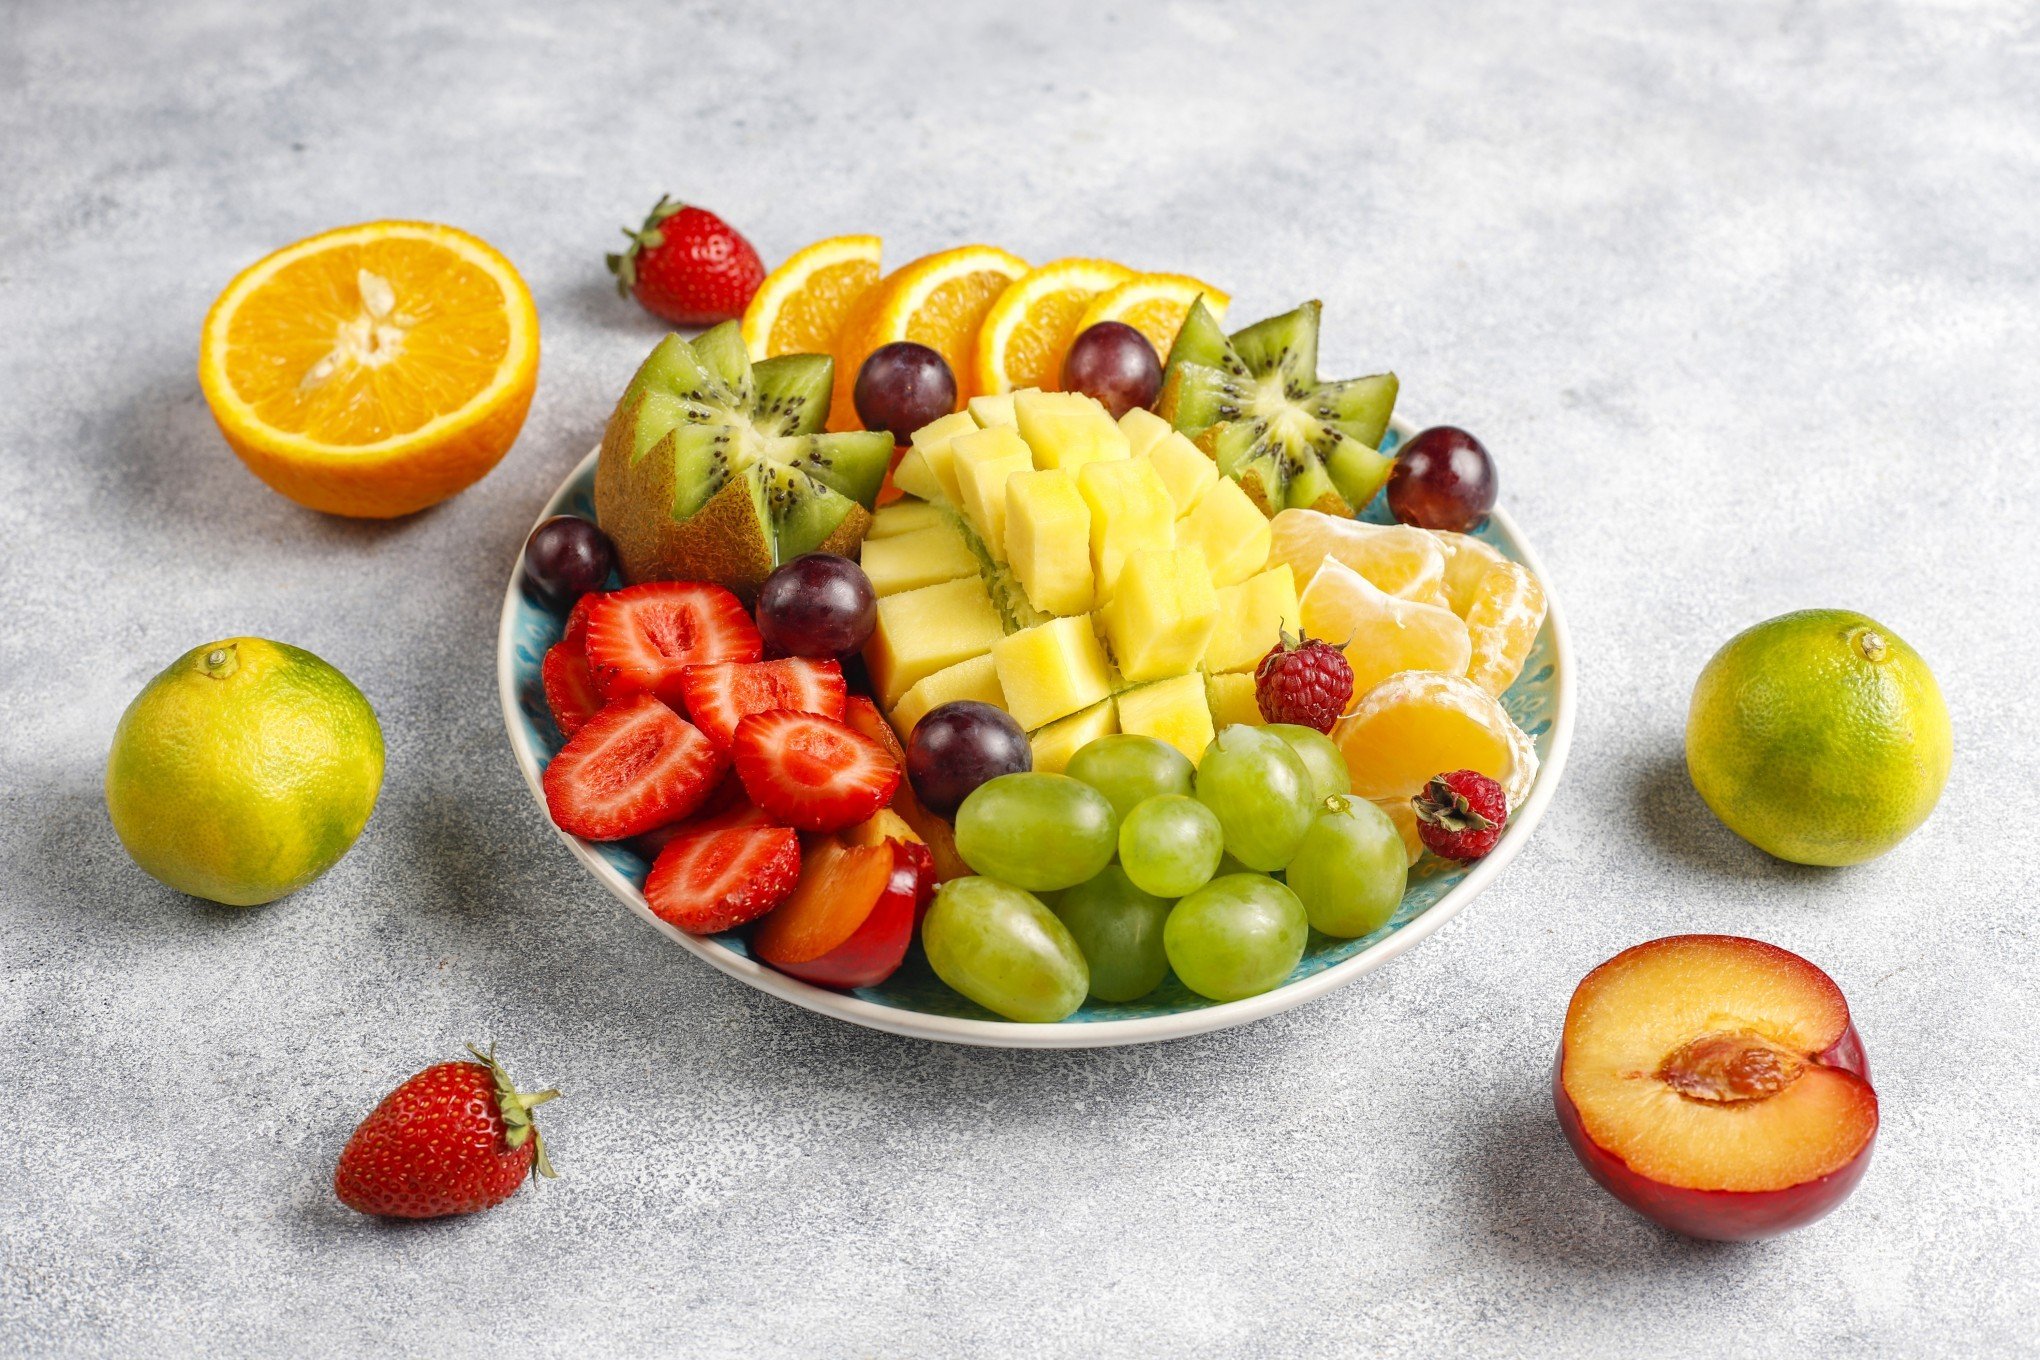 Querendo emagrecer? Veja cinco frutas que ajudam a perder peso